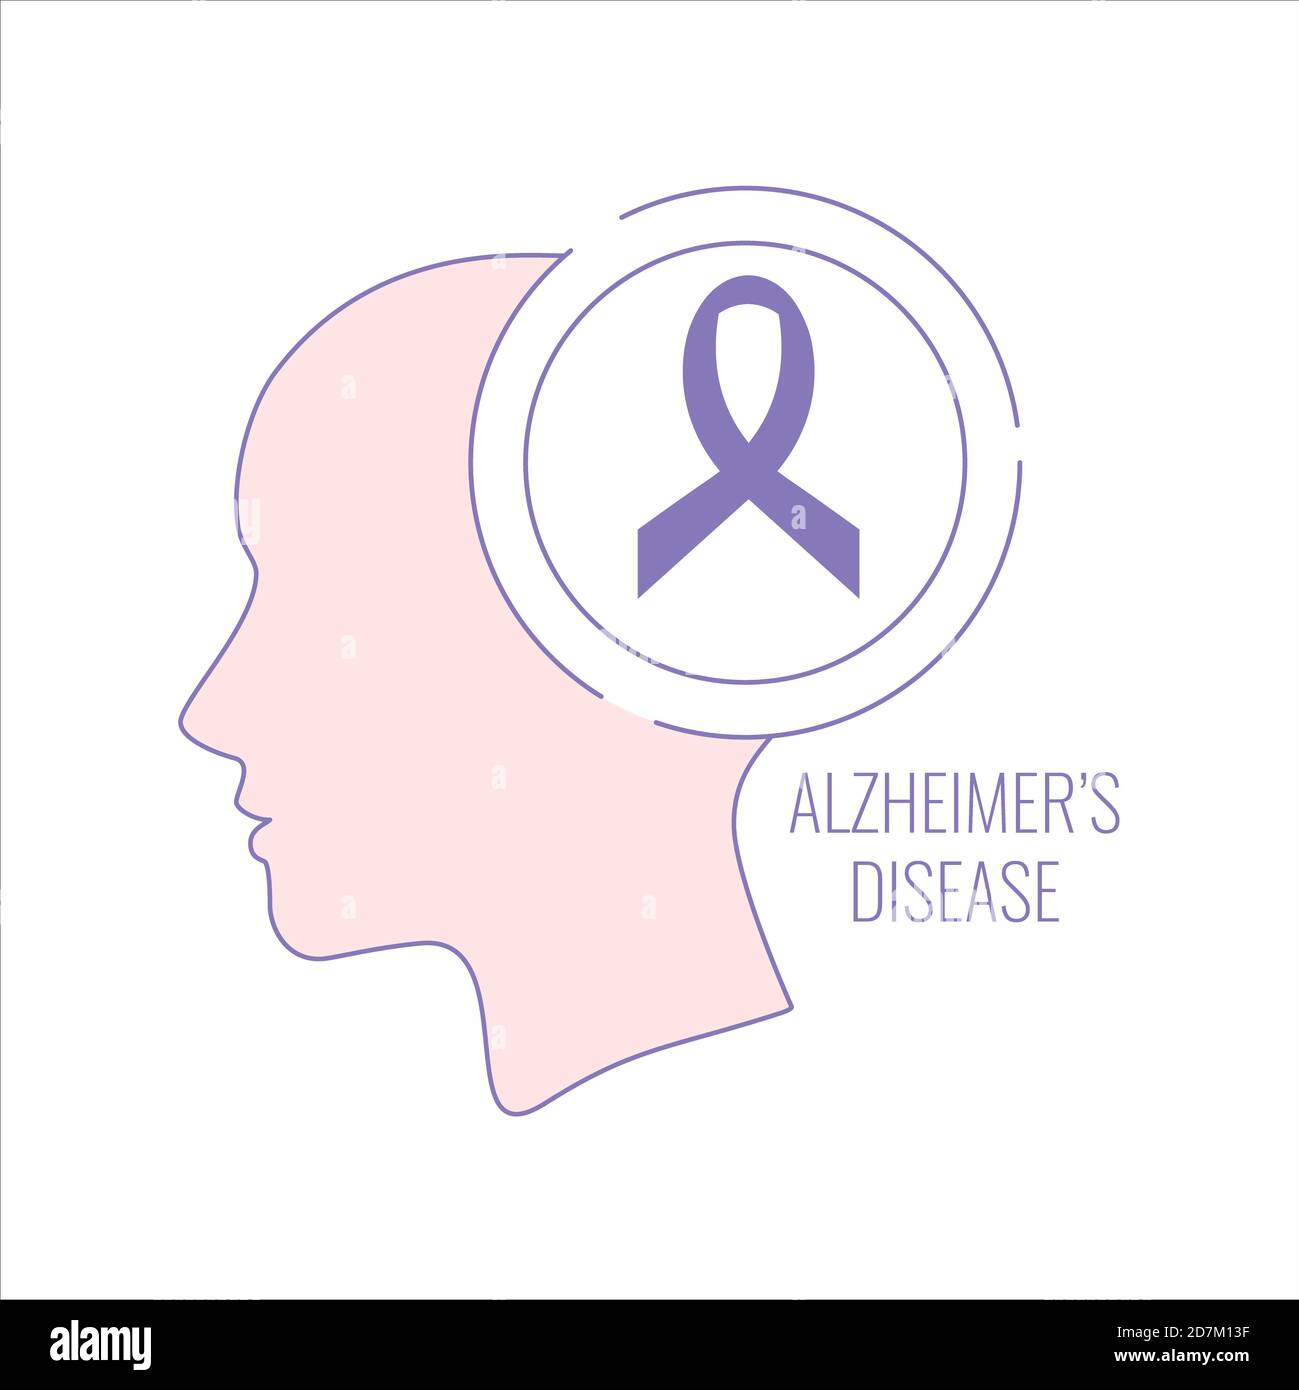 La maladie d'Alzheimer, illustration conceptuelle. Affiche de la maladie d'Alzheimer représentant une silhouette de femme et un ruban de sensibilisation violet sur fond blanc. Banque D'Images